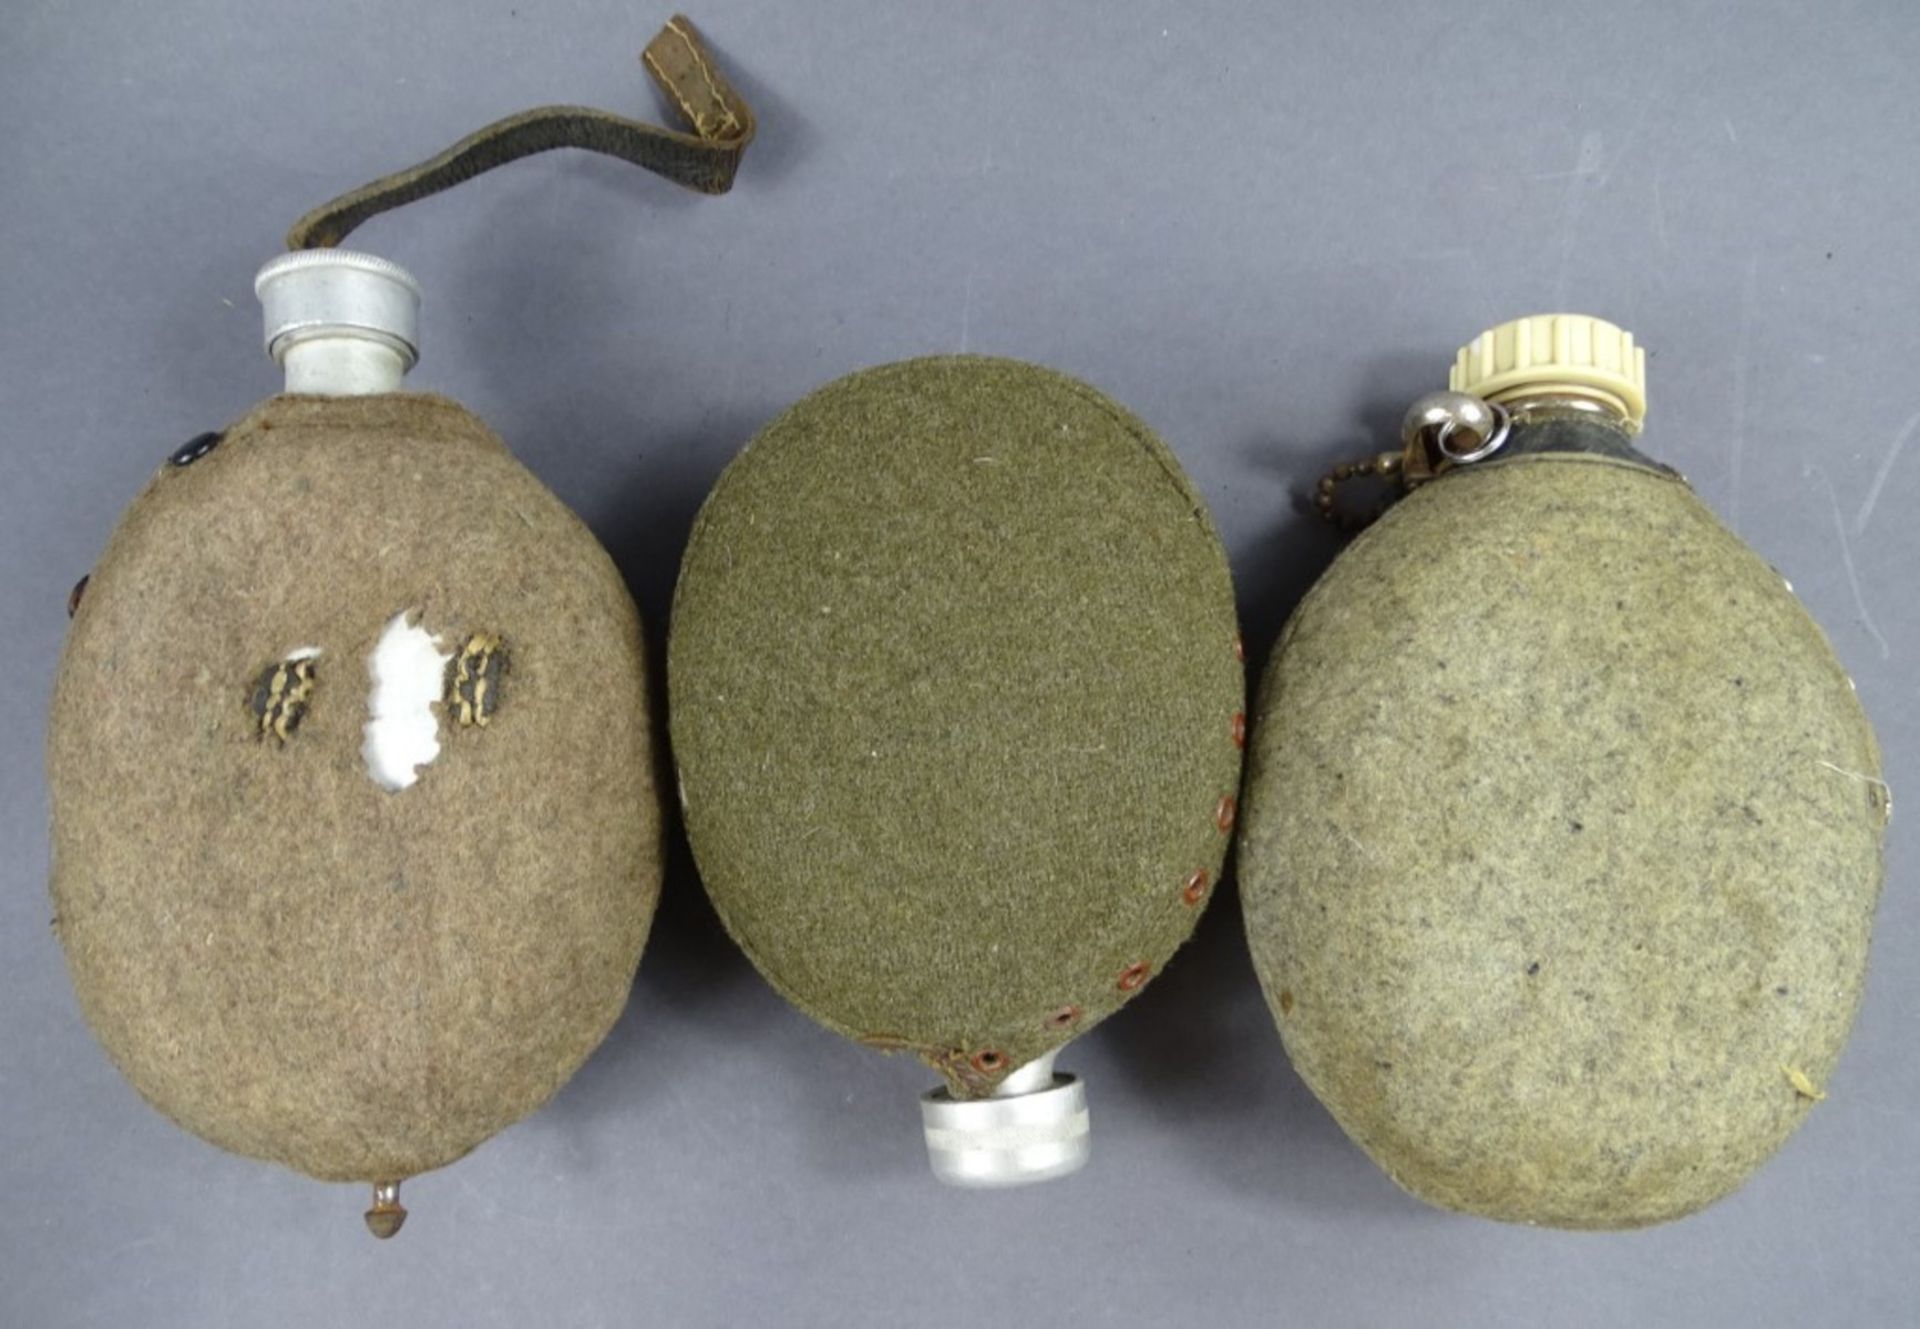 3 Feldflaschen in Filzhülle, Filz löchrig und fleckig, Lederteile rissig, Metall z.T. rostig